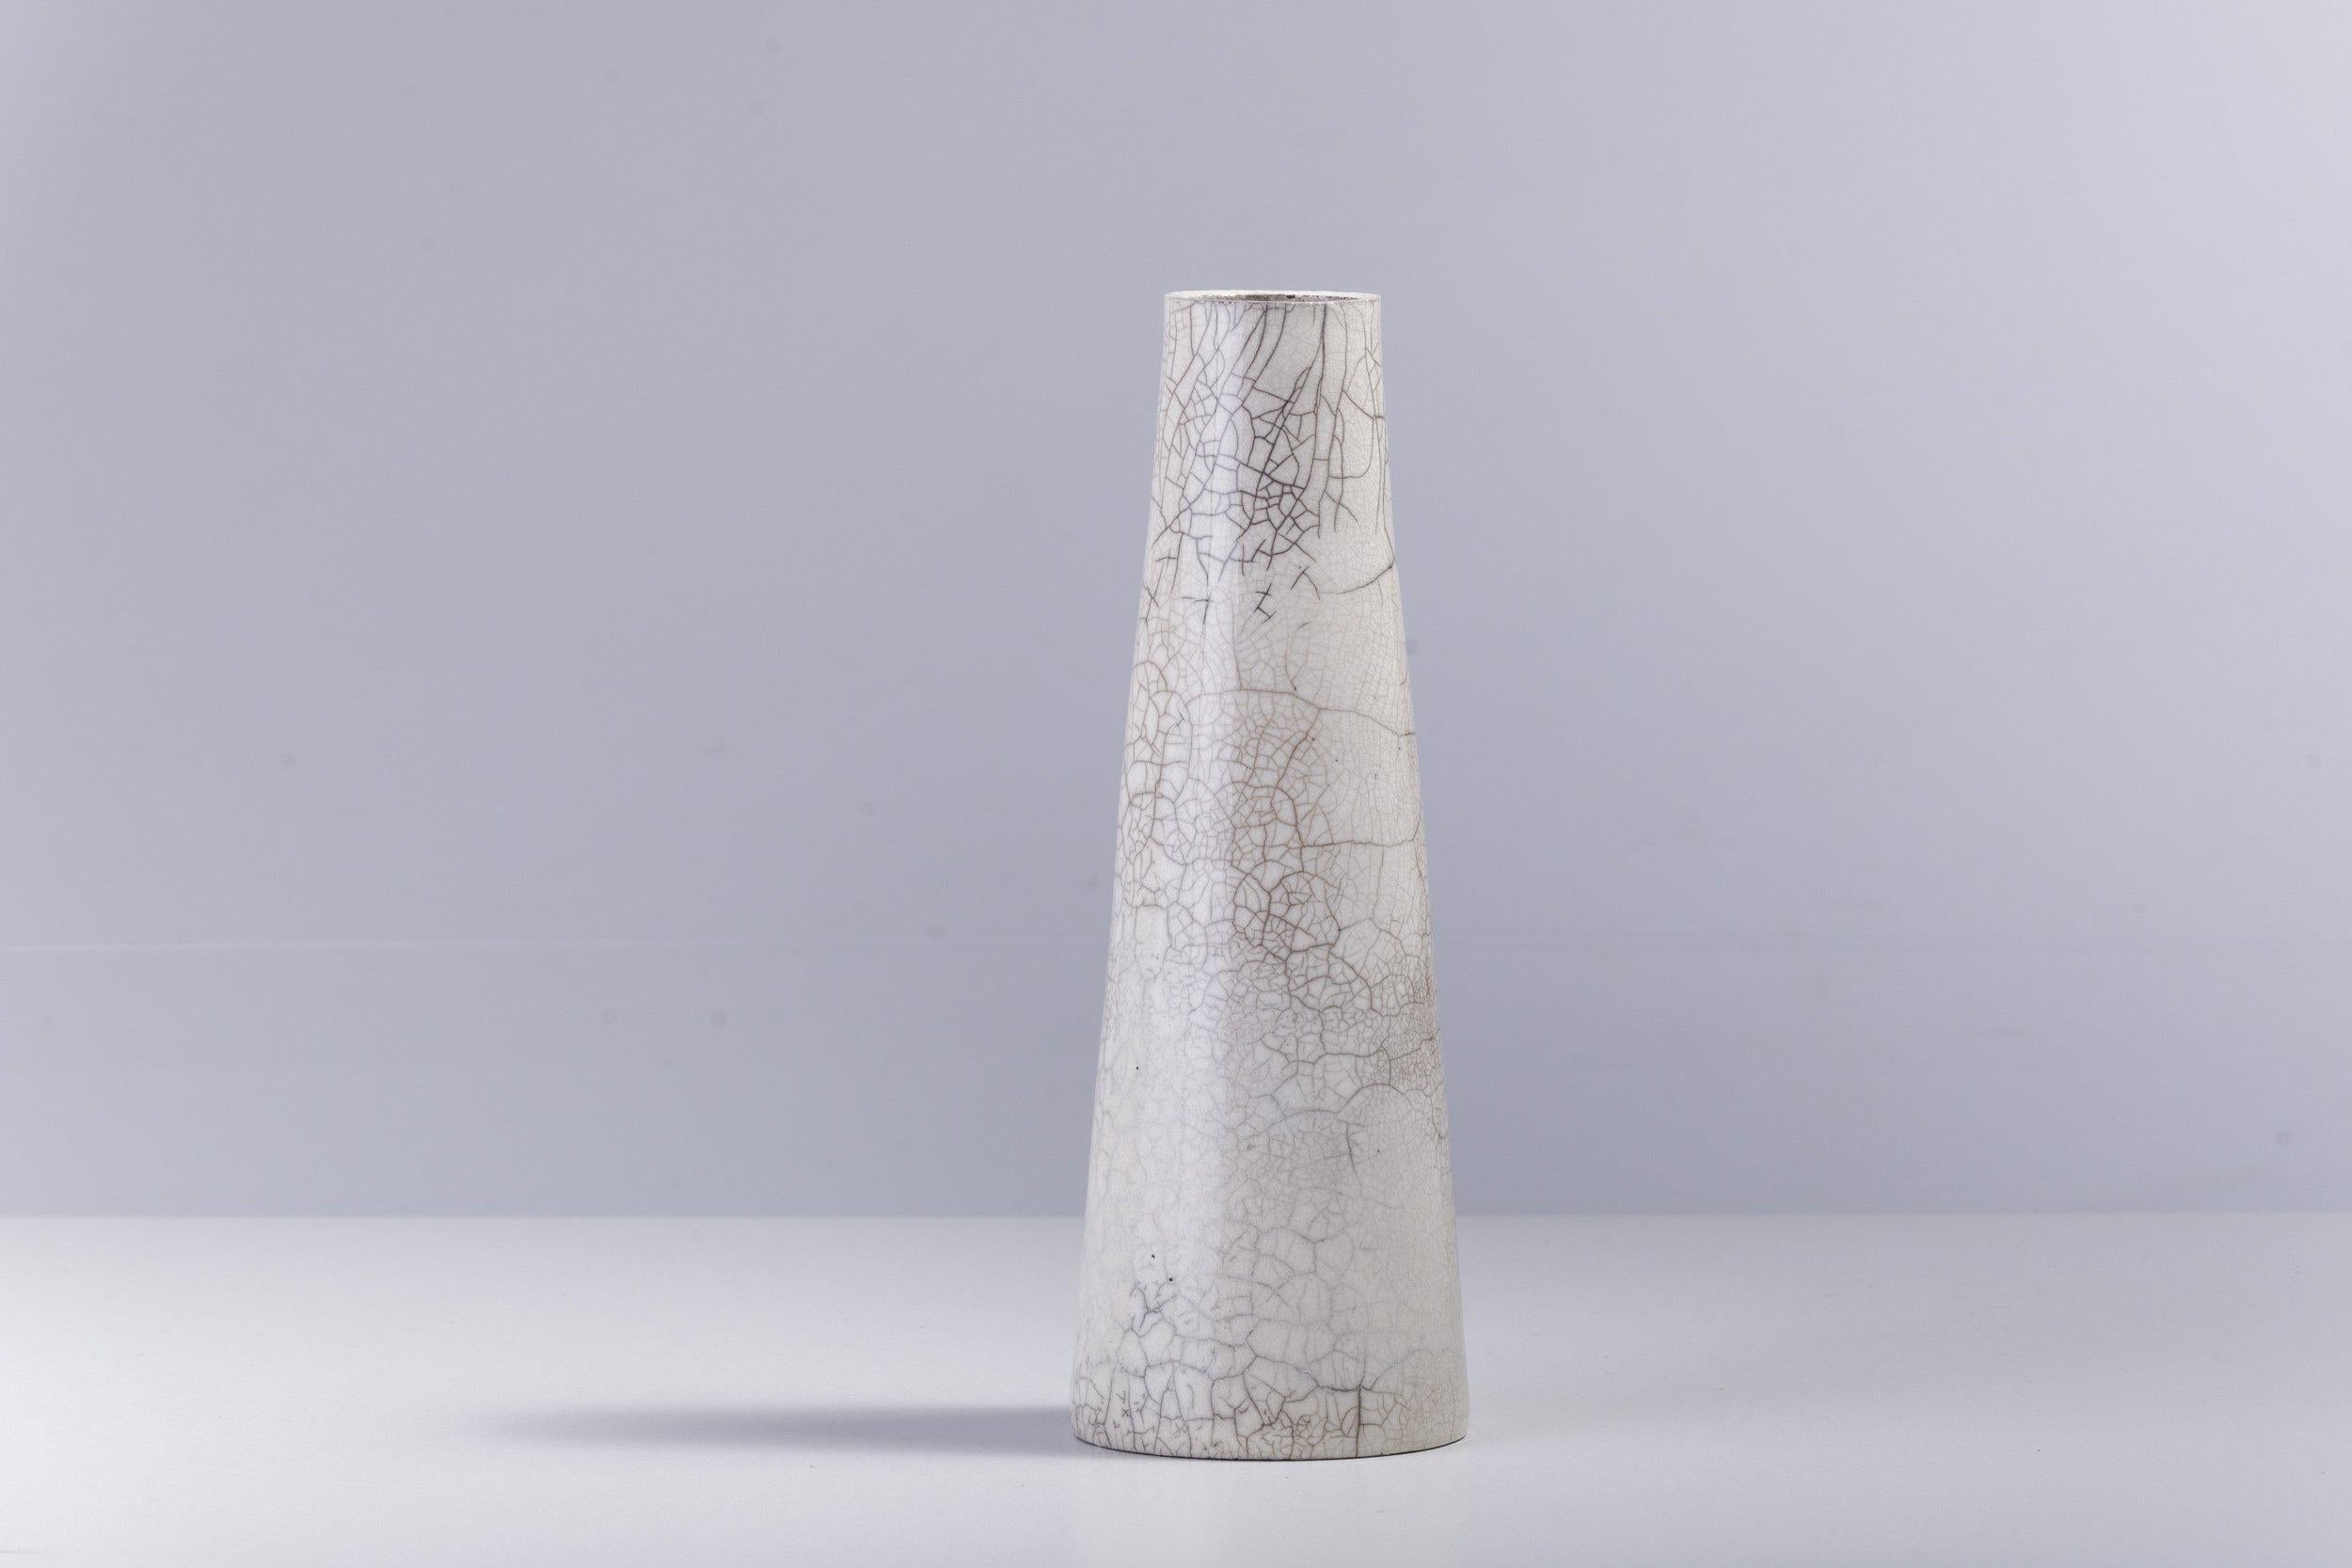 Hana vertikal

Der klare und essentielle Charakter dieser Vase wird durch neutrale Farben verstärkt, die durch die japanische Raku-Keramikbrenntechnik in ein auffälliges Spiel aus hellen und dunklen Flecken verwandelt werden. Die polierte, aber